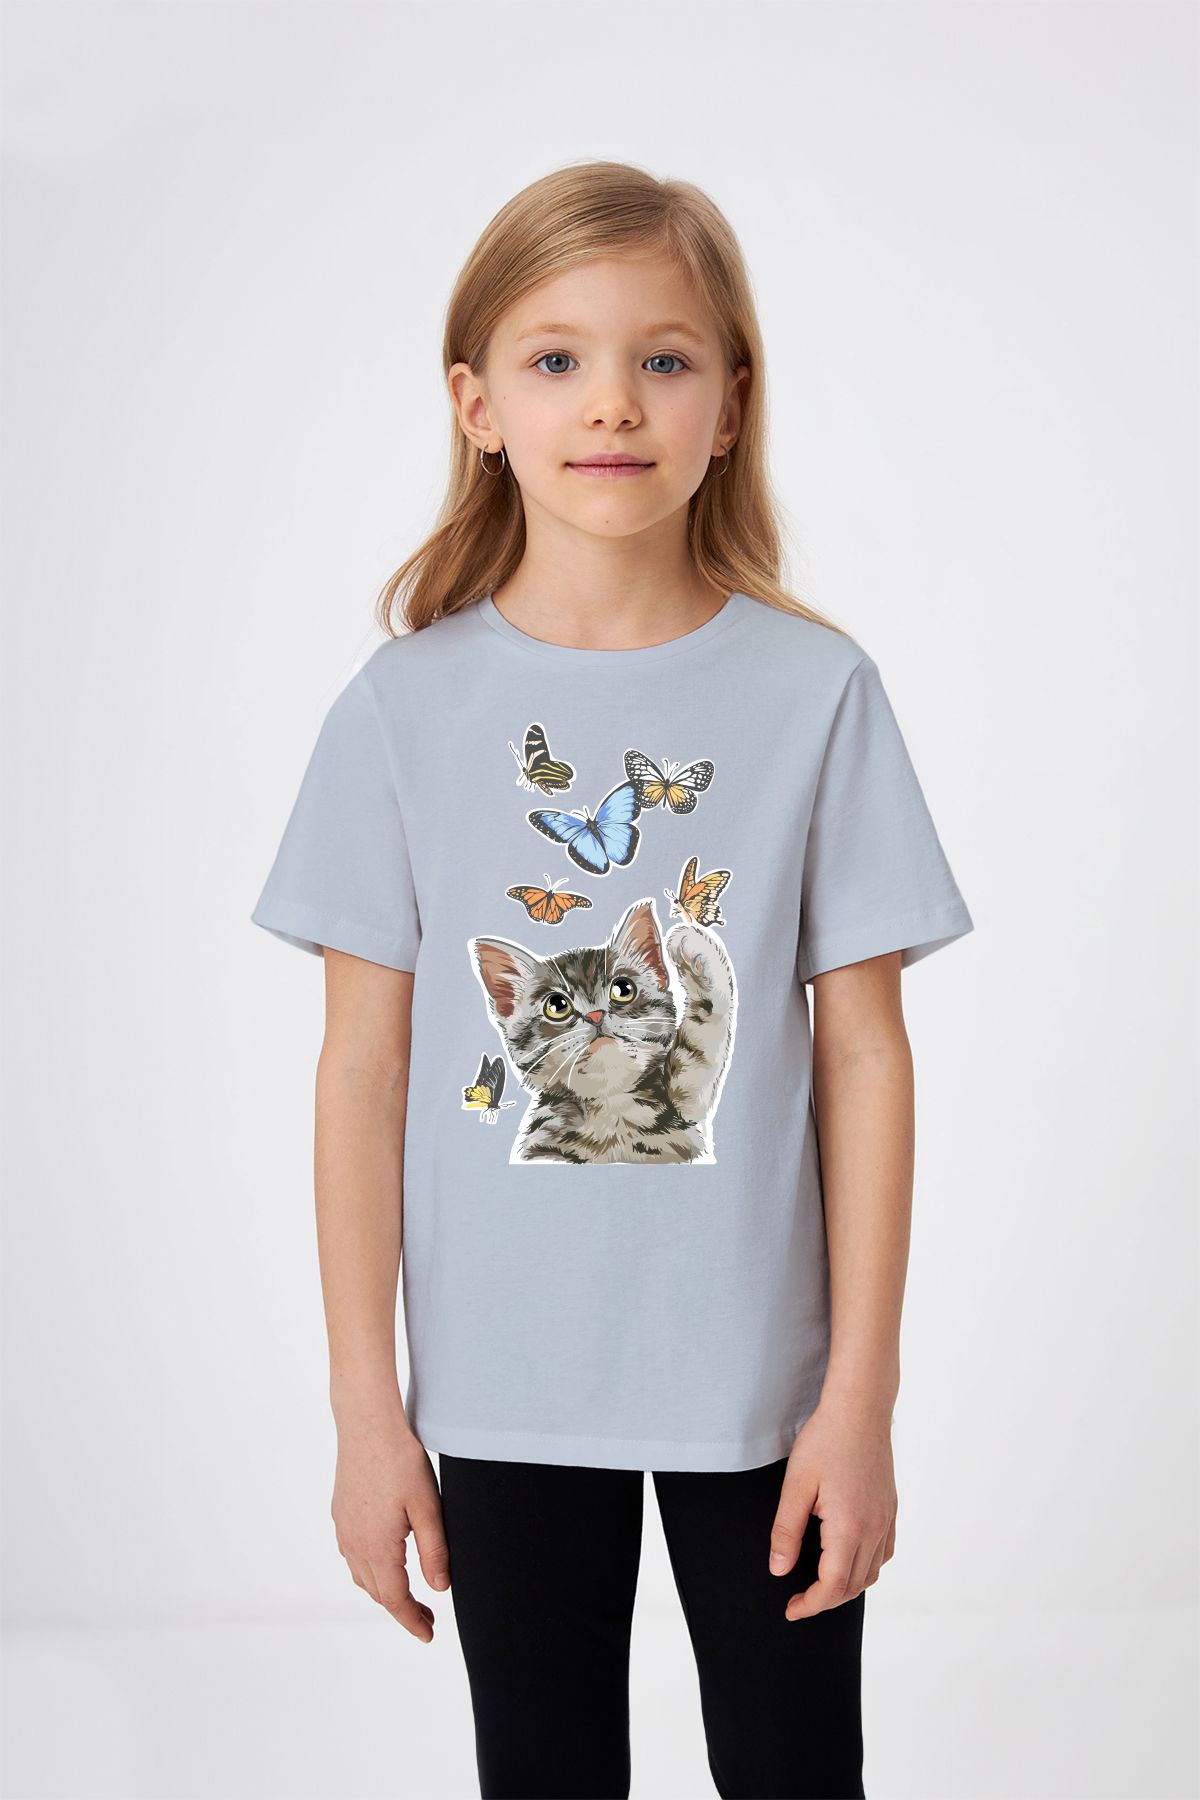 ADABEBEK Kelebeklerle Oynayan Kedicik Baskılı Kız Çocuk Tişört